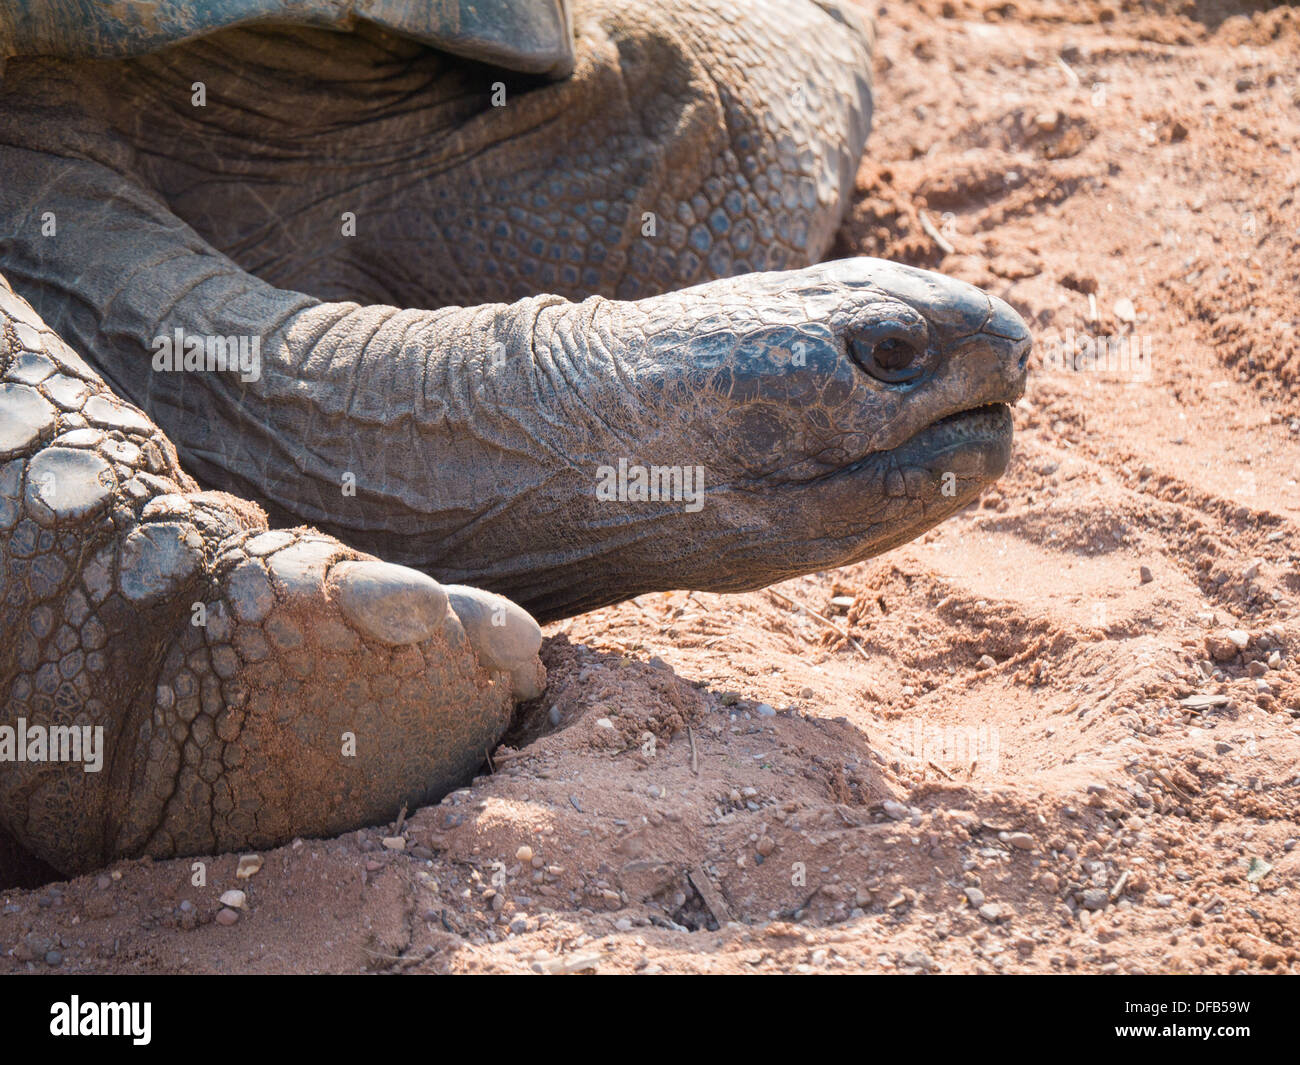 La tortue géante d'Aldabra (Aldabrachelys gigantea) au zoo de Twycross, Tamworth, Royaume-Uni. Banque D'Images